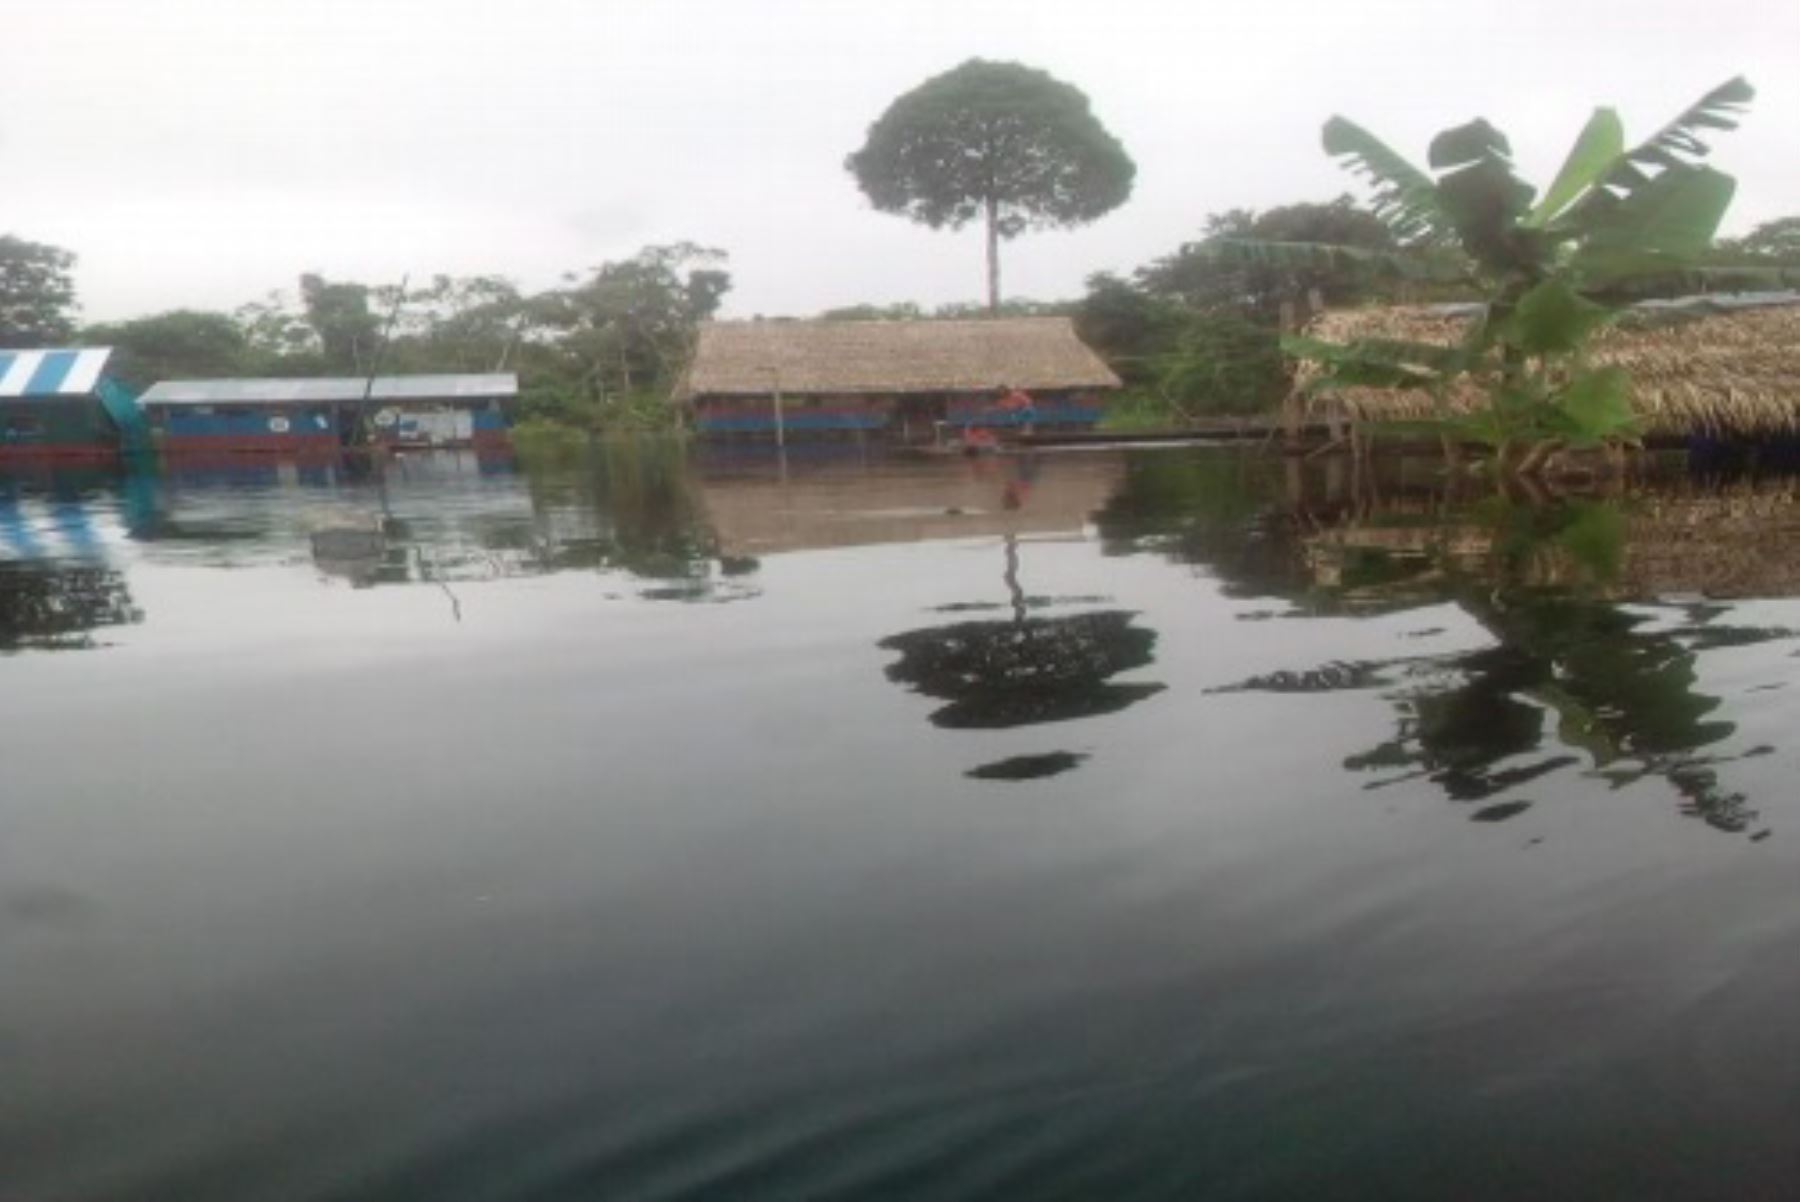 Según el reporte preliminar del COEN, 14 instituciones educativas fueron afectadas por la inundación en el distrito de Urarinas, región Loreto.